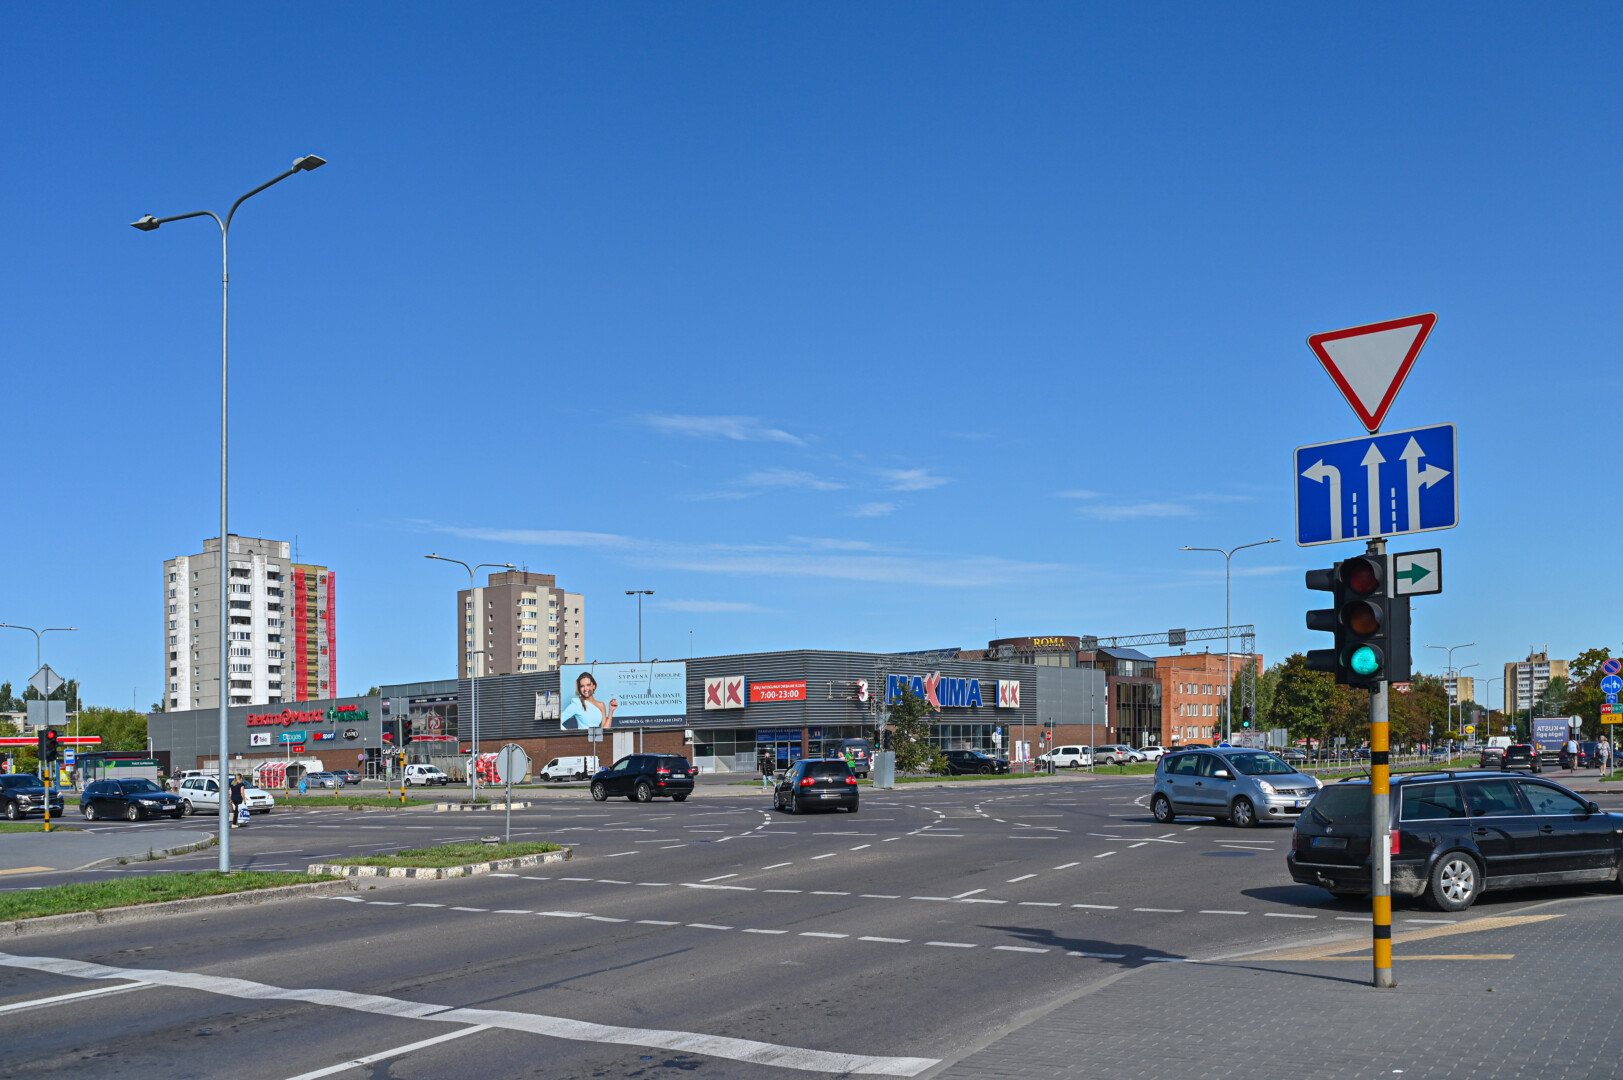 Apie didžiulės Nemuno ir Klaipėdos gatvių sankryžos rekonstrukciją kalbėta irgi jau ne vienerius metus. G. KARTANO nuotr.